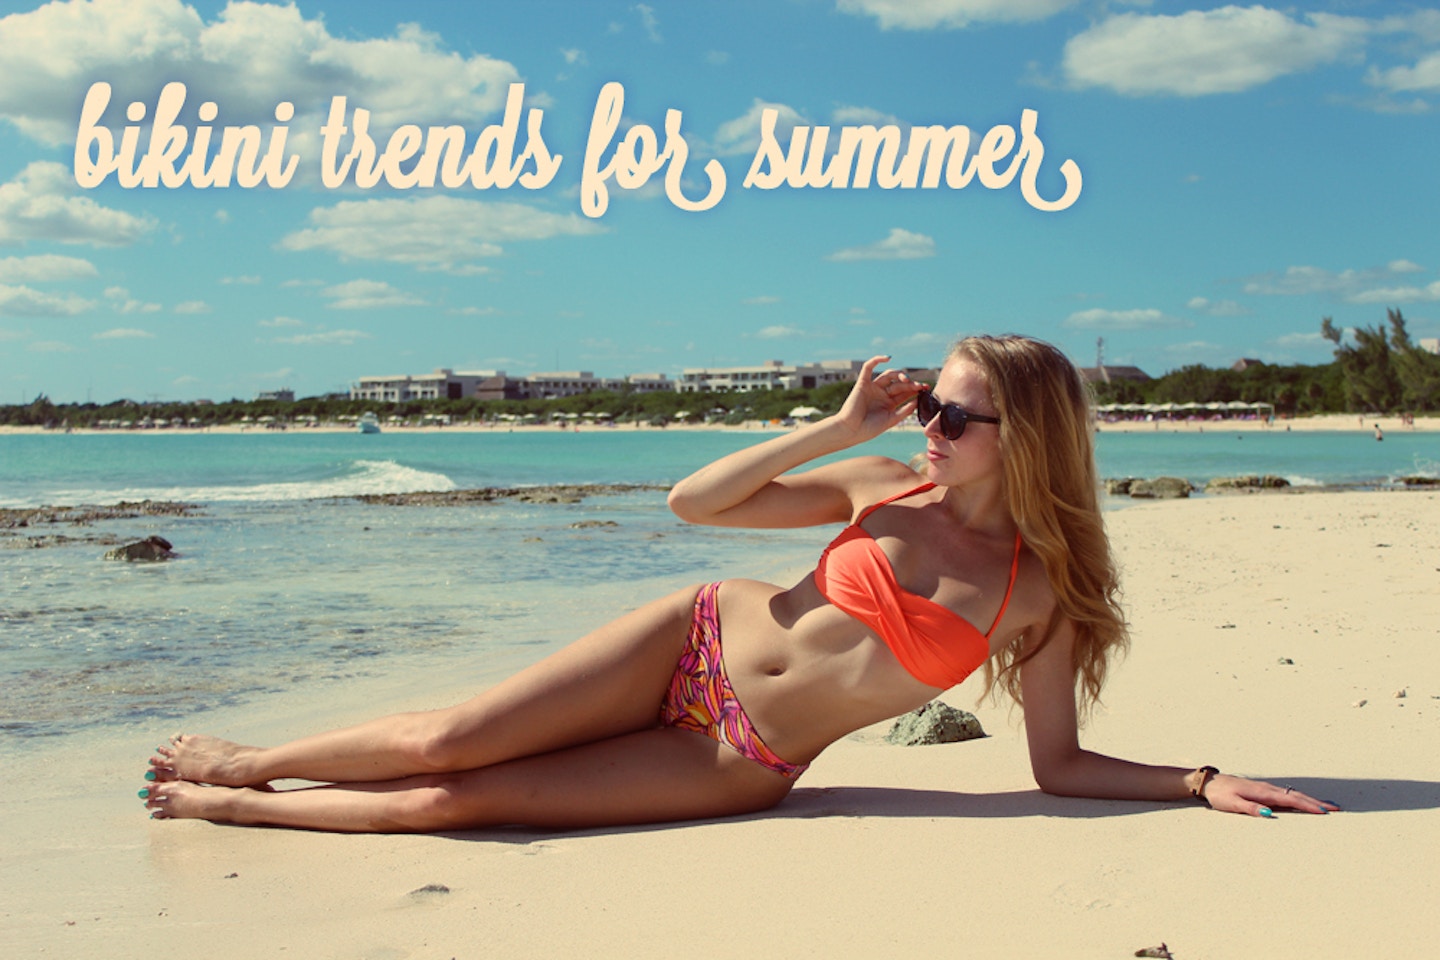 Bikini trends for summer 2013!